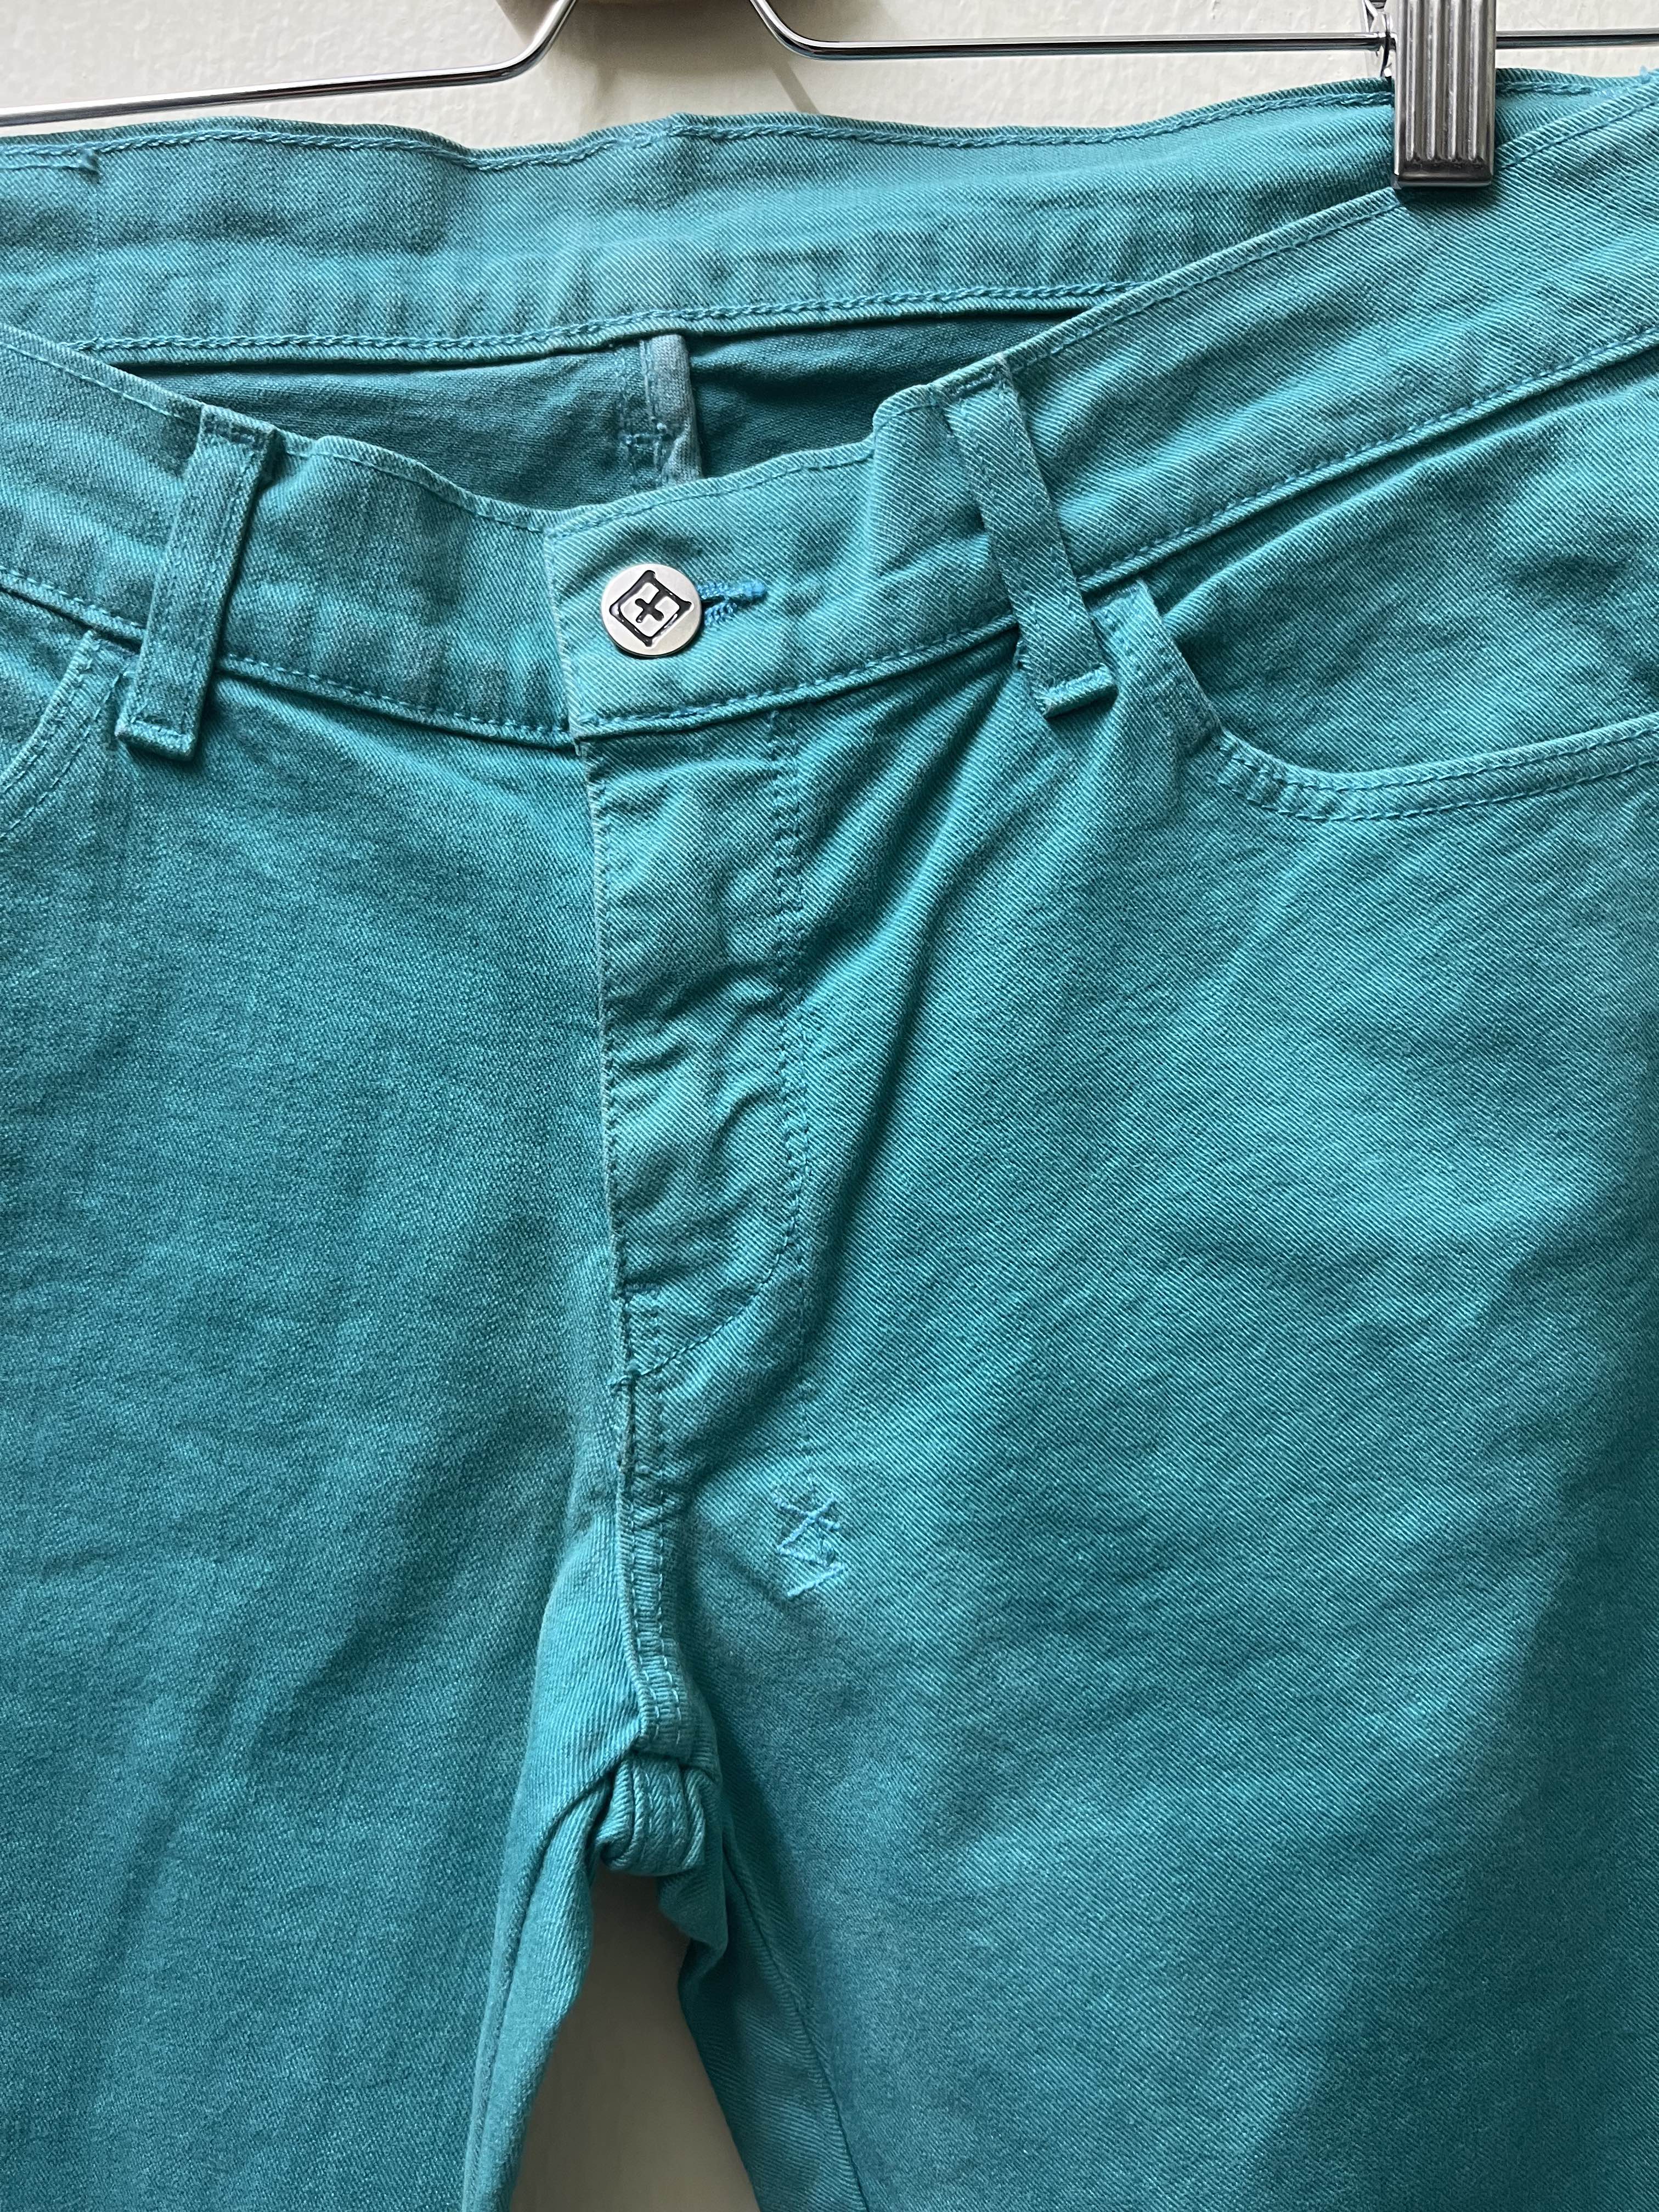 Ksubi Denim Jeans Pants - 2